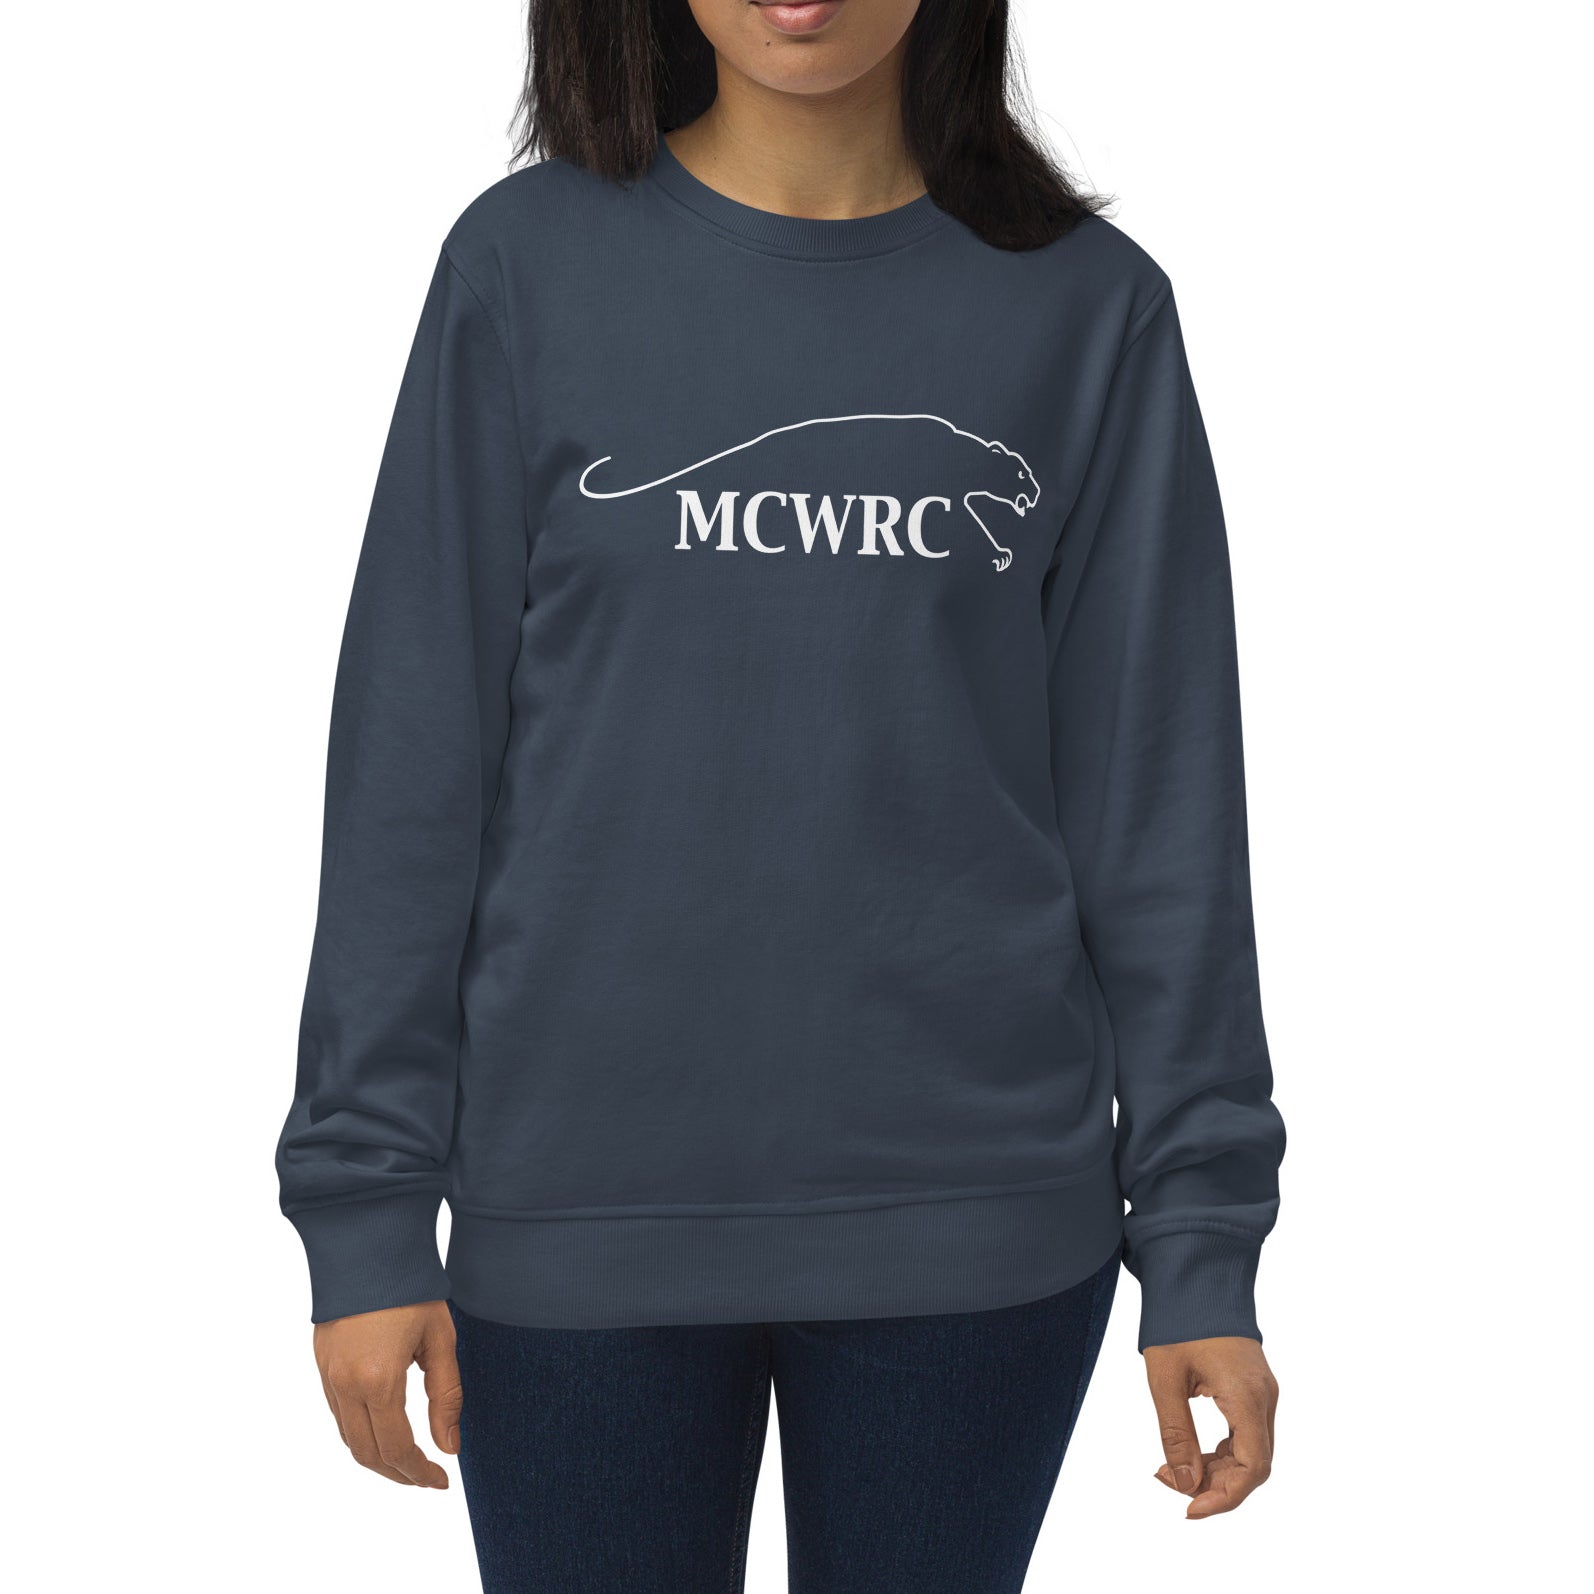 Rugby Imports MCWRC Organic Crewnweck Sweatshirt